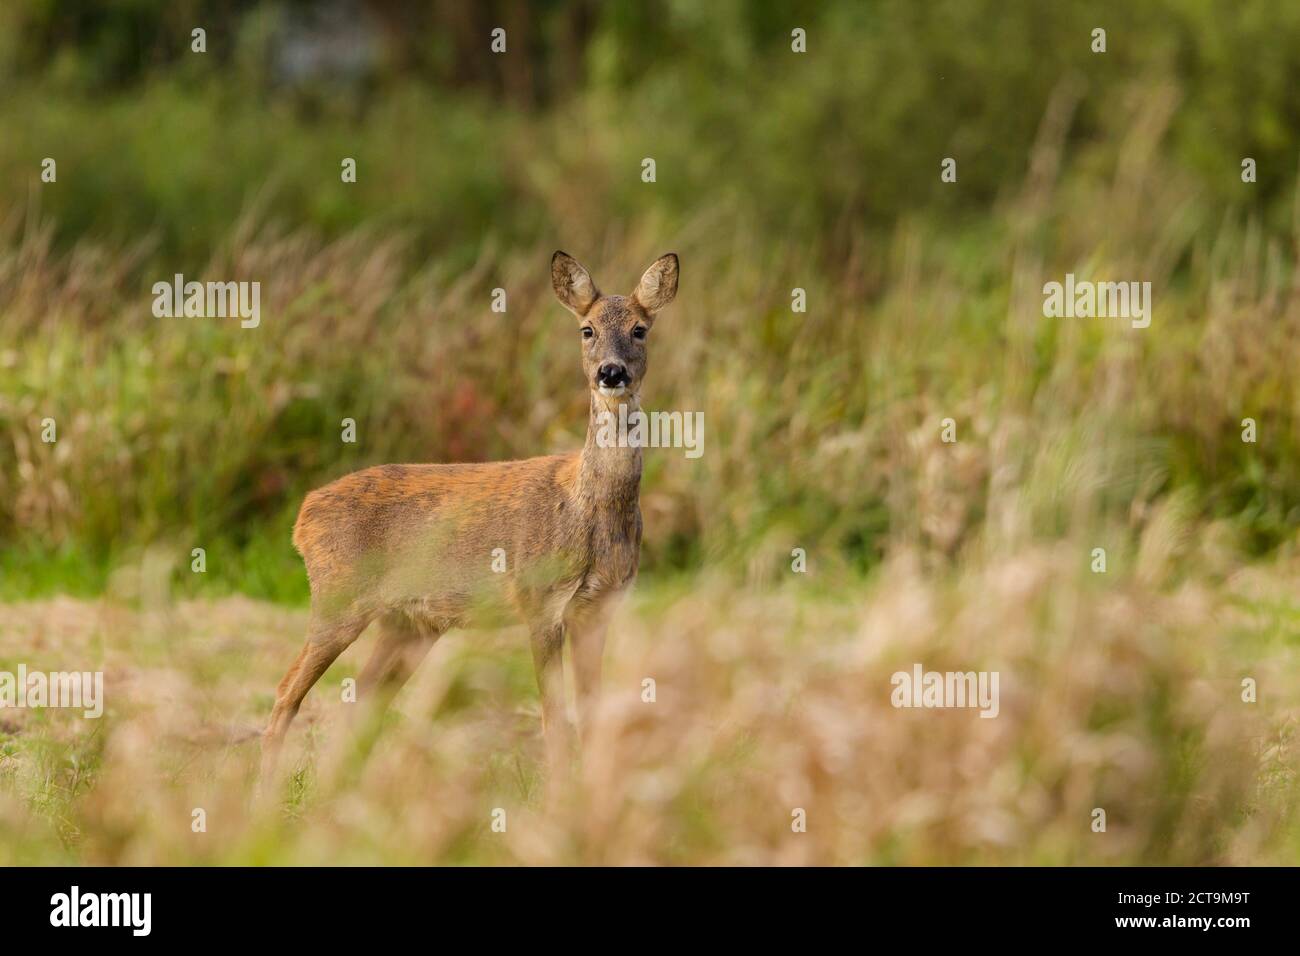 Germany, Niendorf, Roe deer in grass Stock Photo